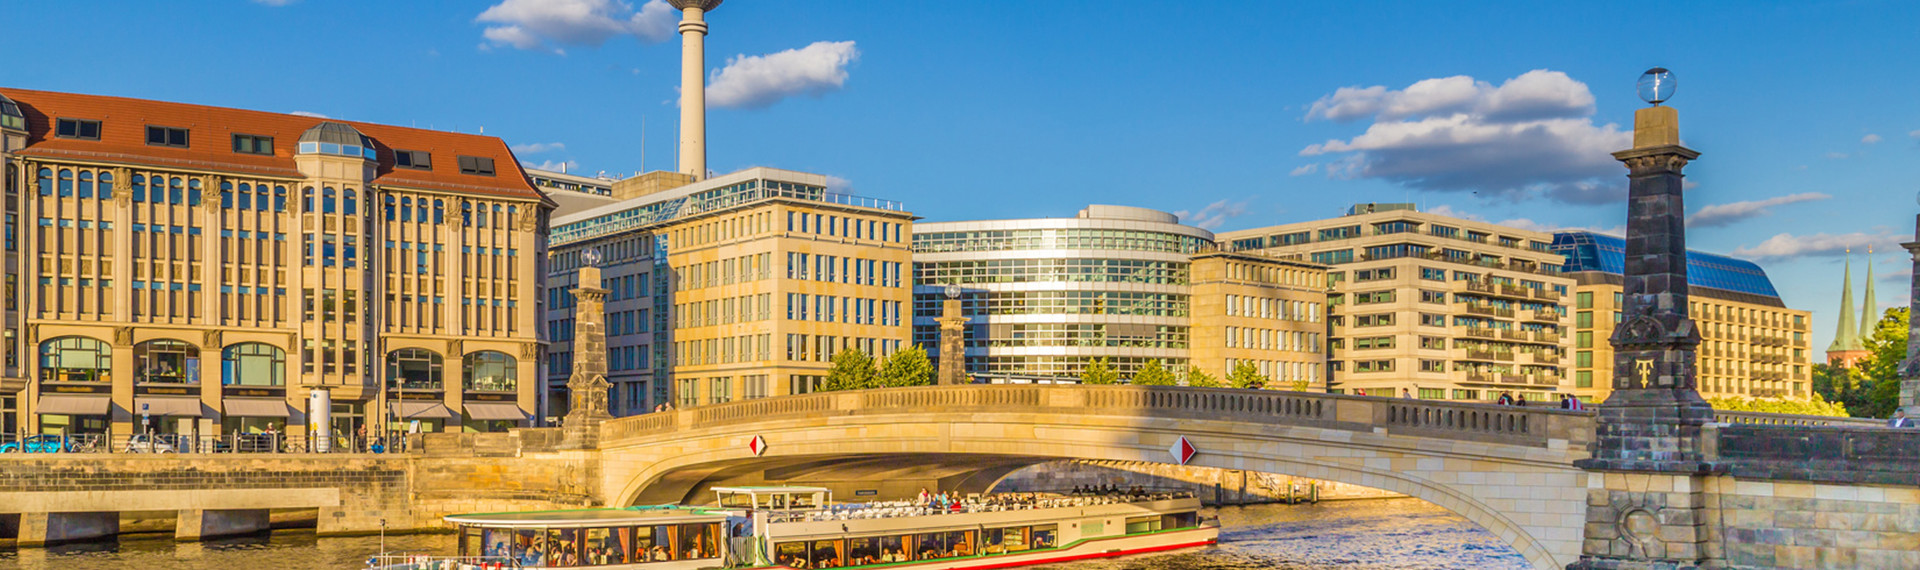 Båtsightseeing i Berlin | Pissup Utdrikningslag